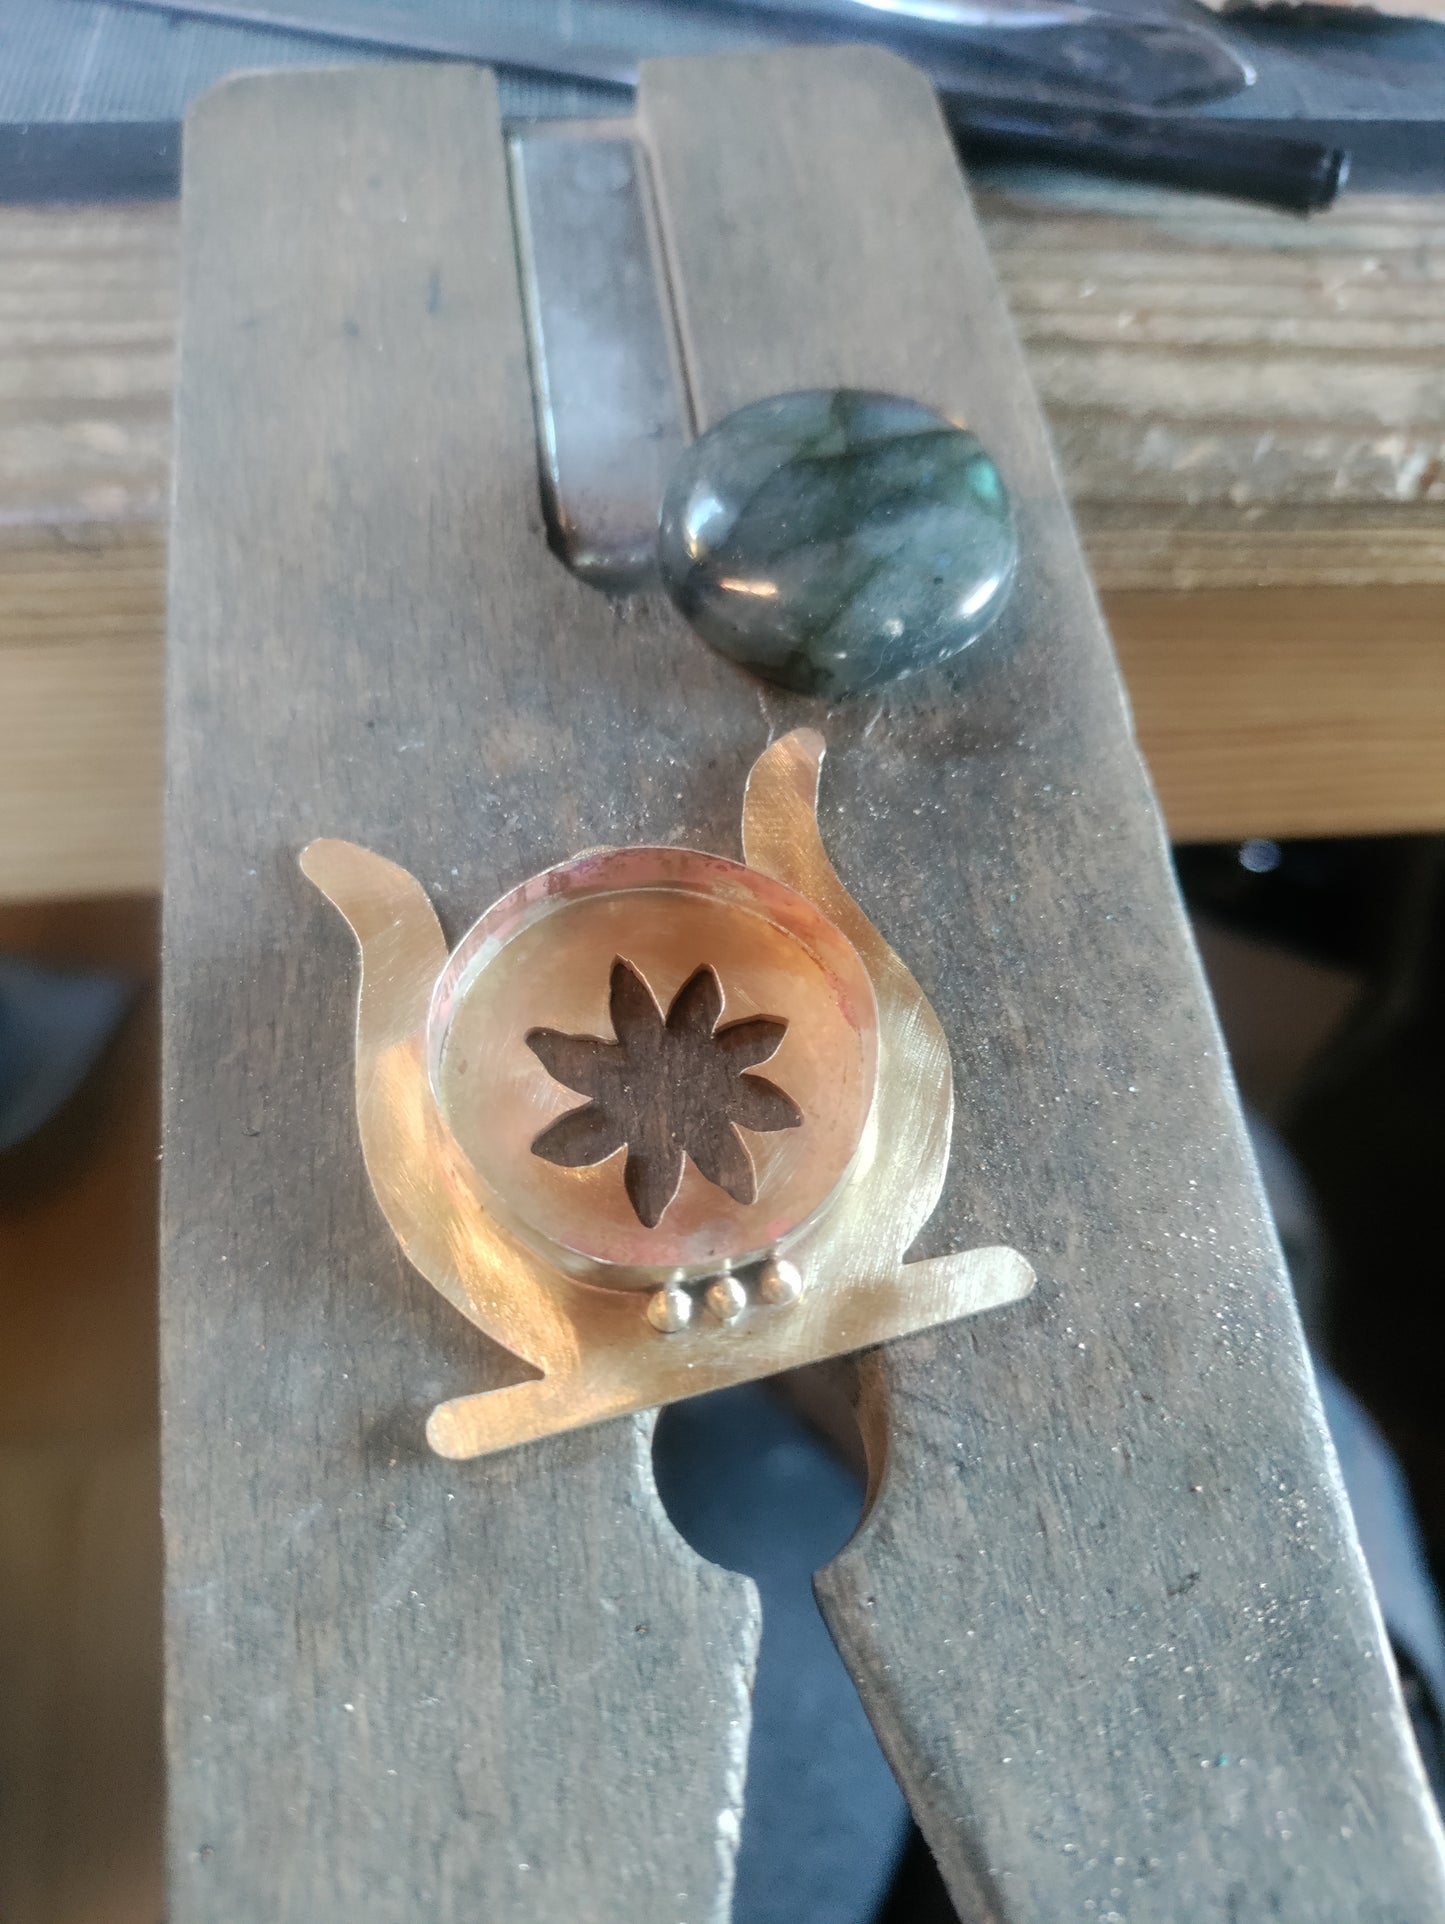 Golden Egyptian solar disk necklace and green Labradorite LEIA&CO